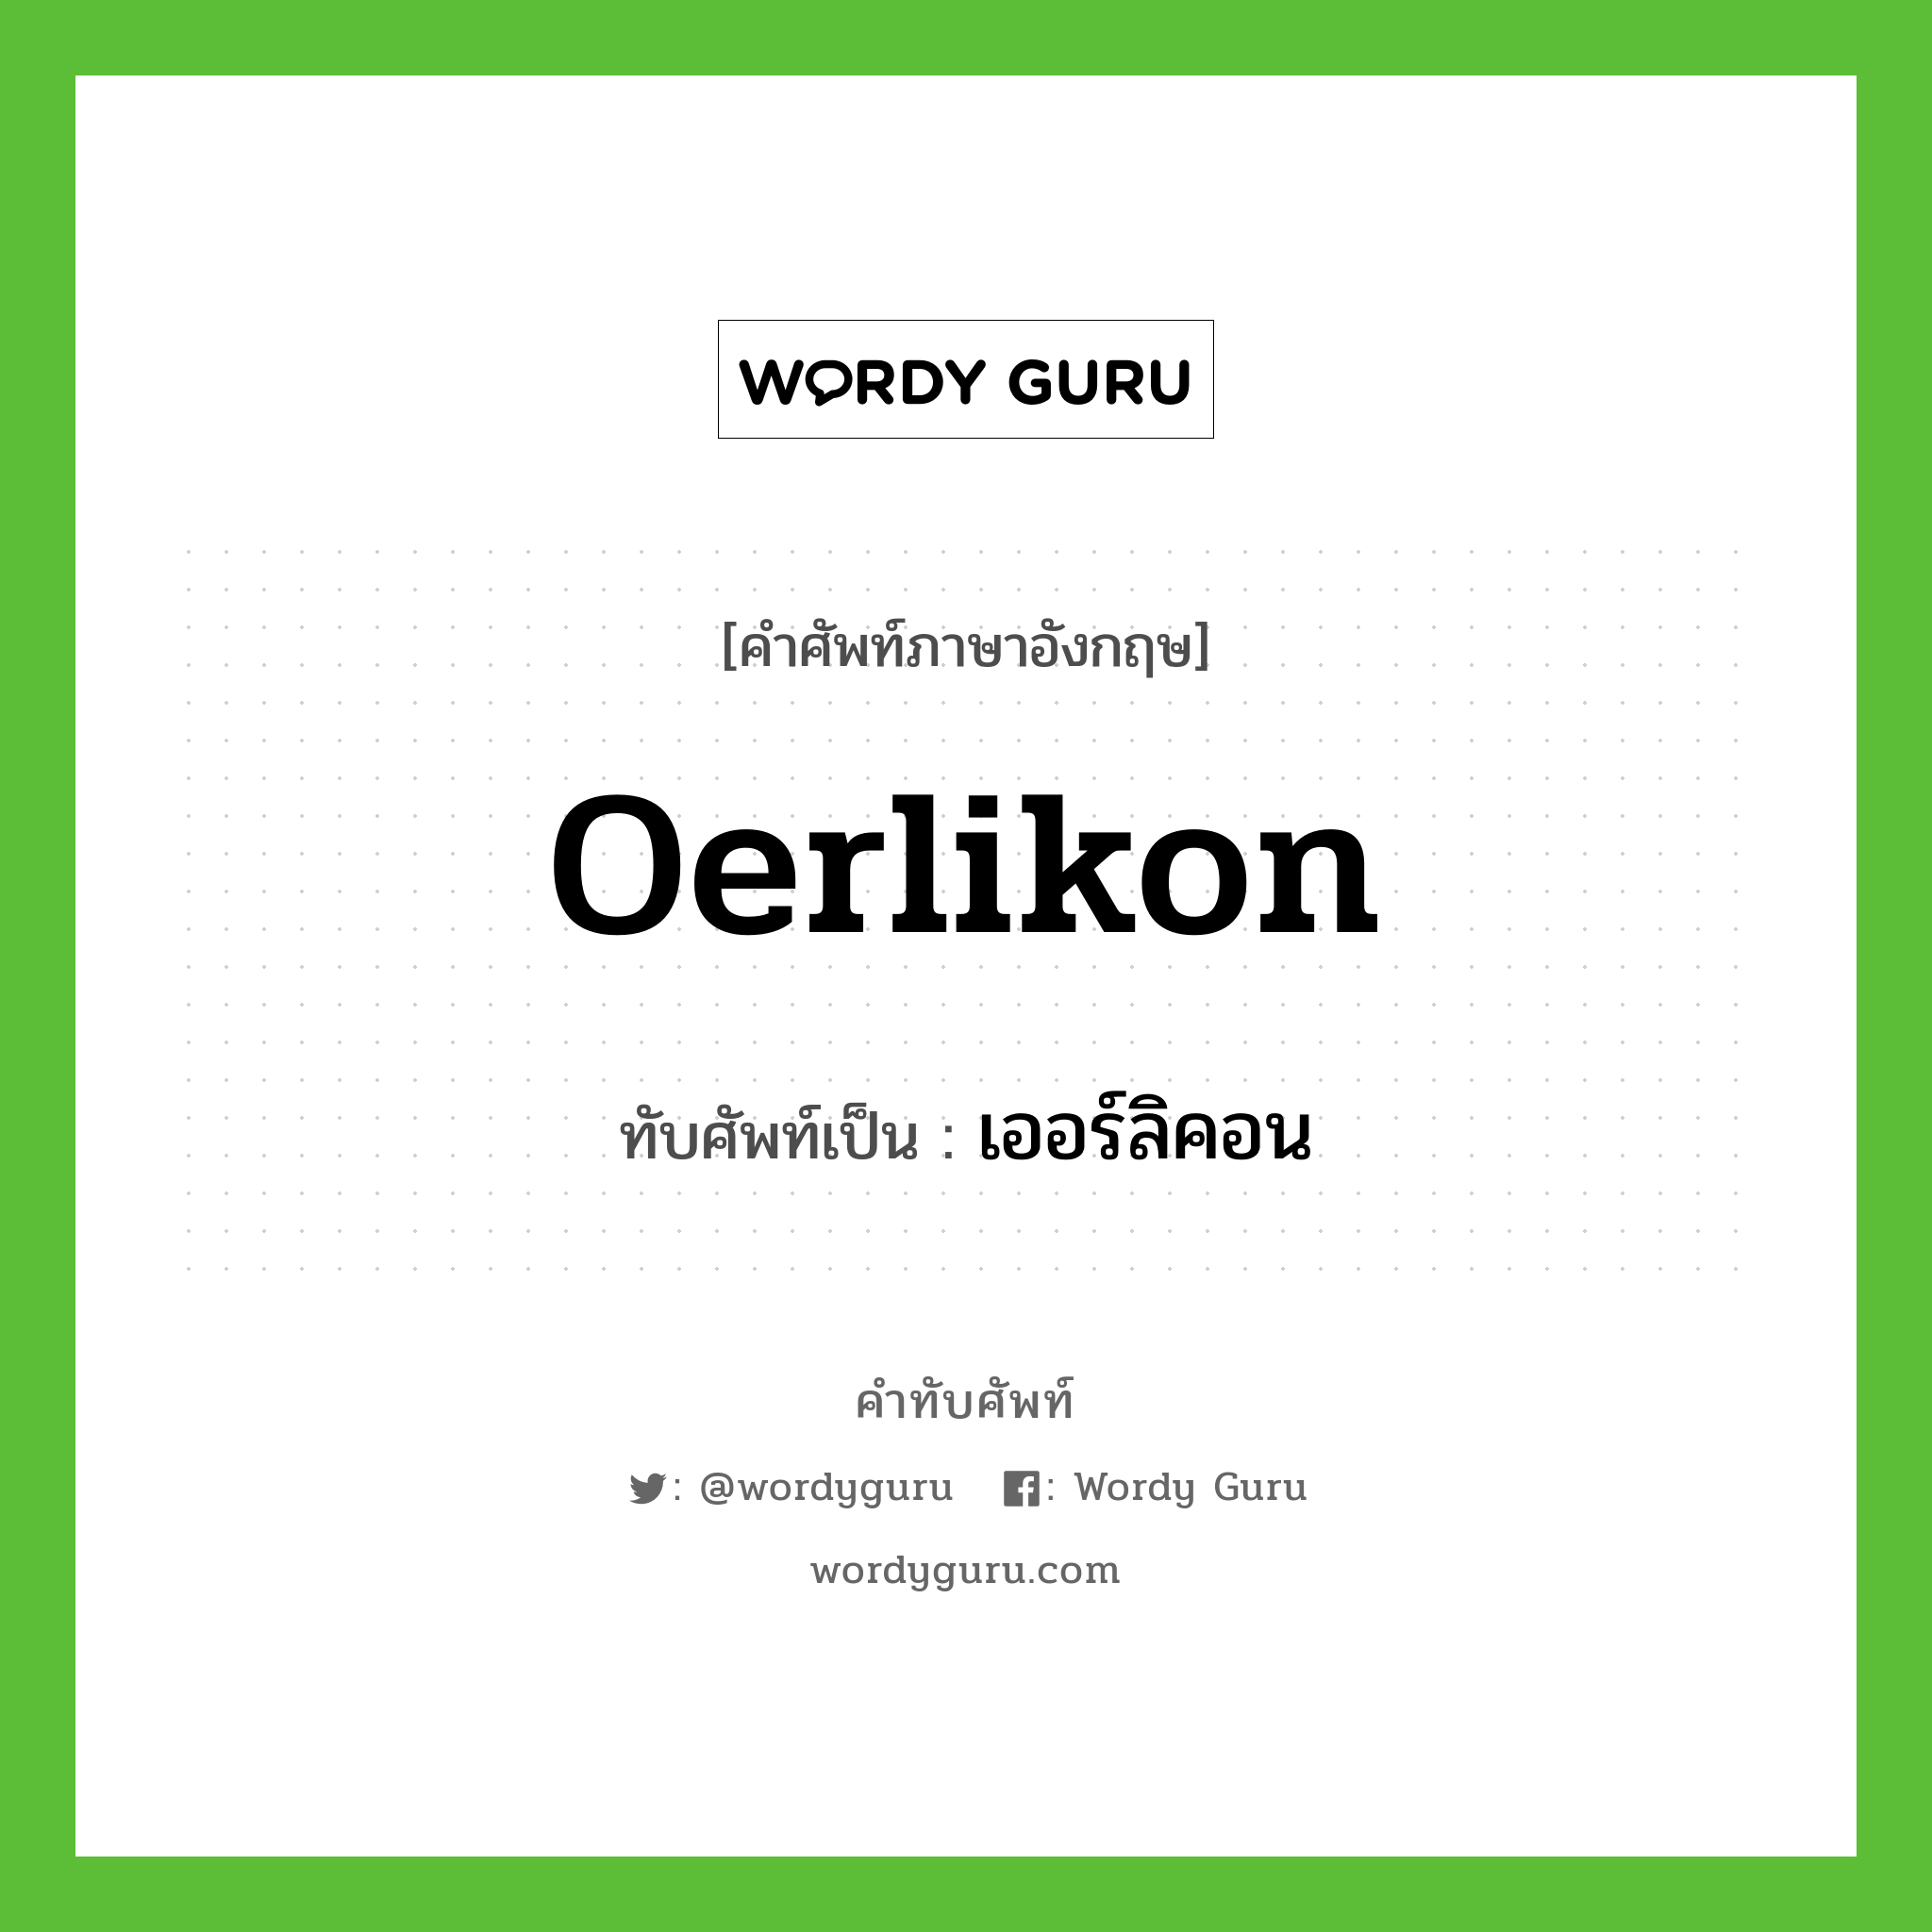 oerlikon เขียนเป็นคำไทยว่าอะไร?, คำศัพท์ภาษาอังกฤษ oerlikon ทับศัพท์เป็น เออร์ลิคอน